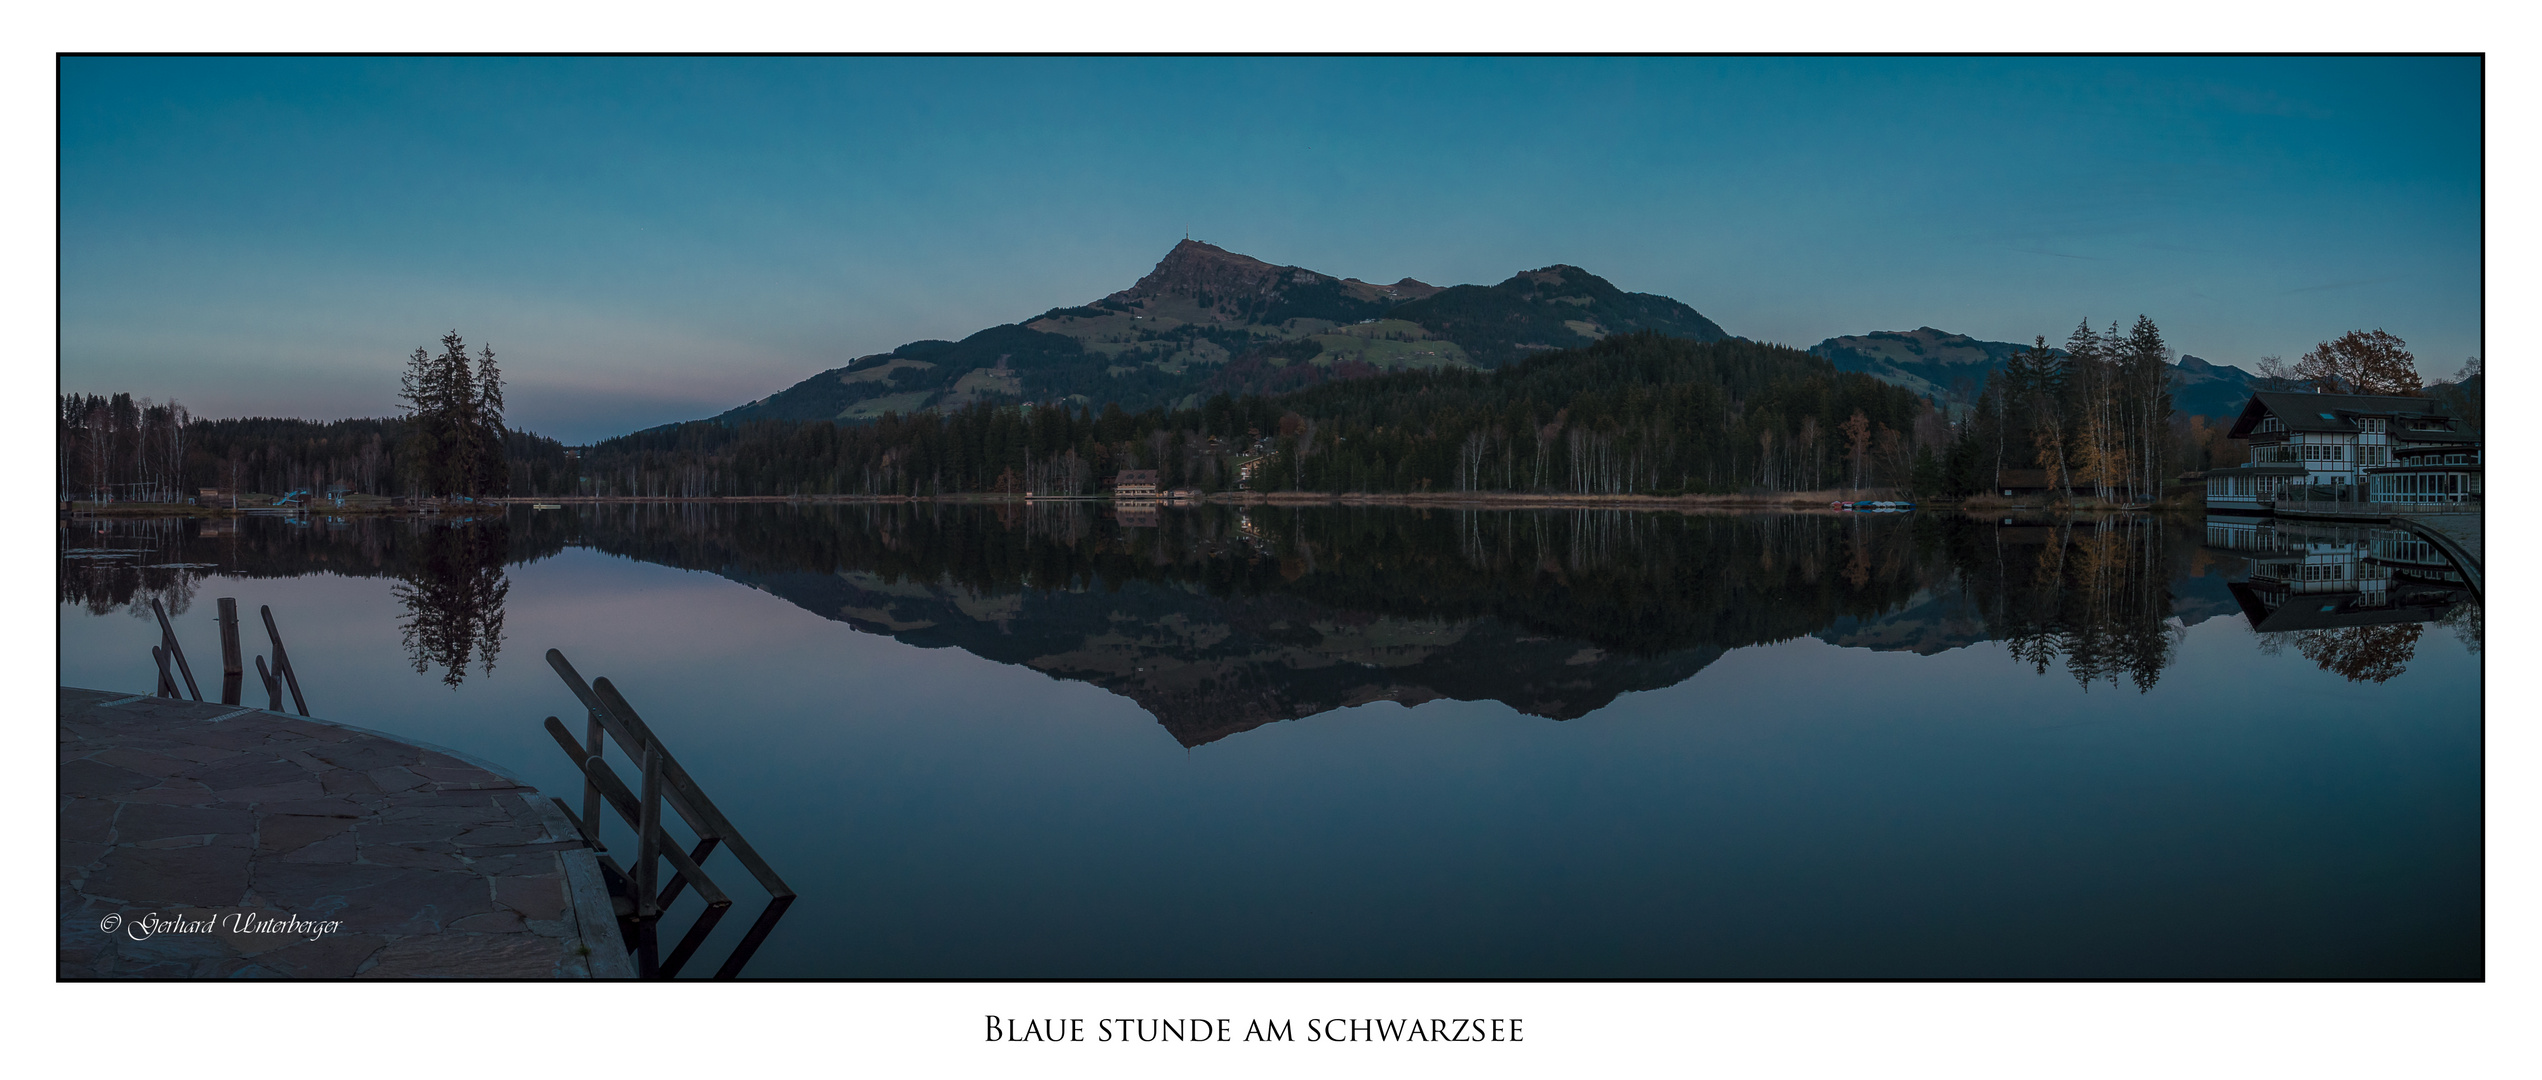 Blaue Stunde am Schwarzsee bei Kitzbühel